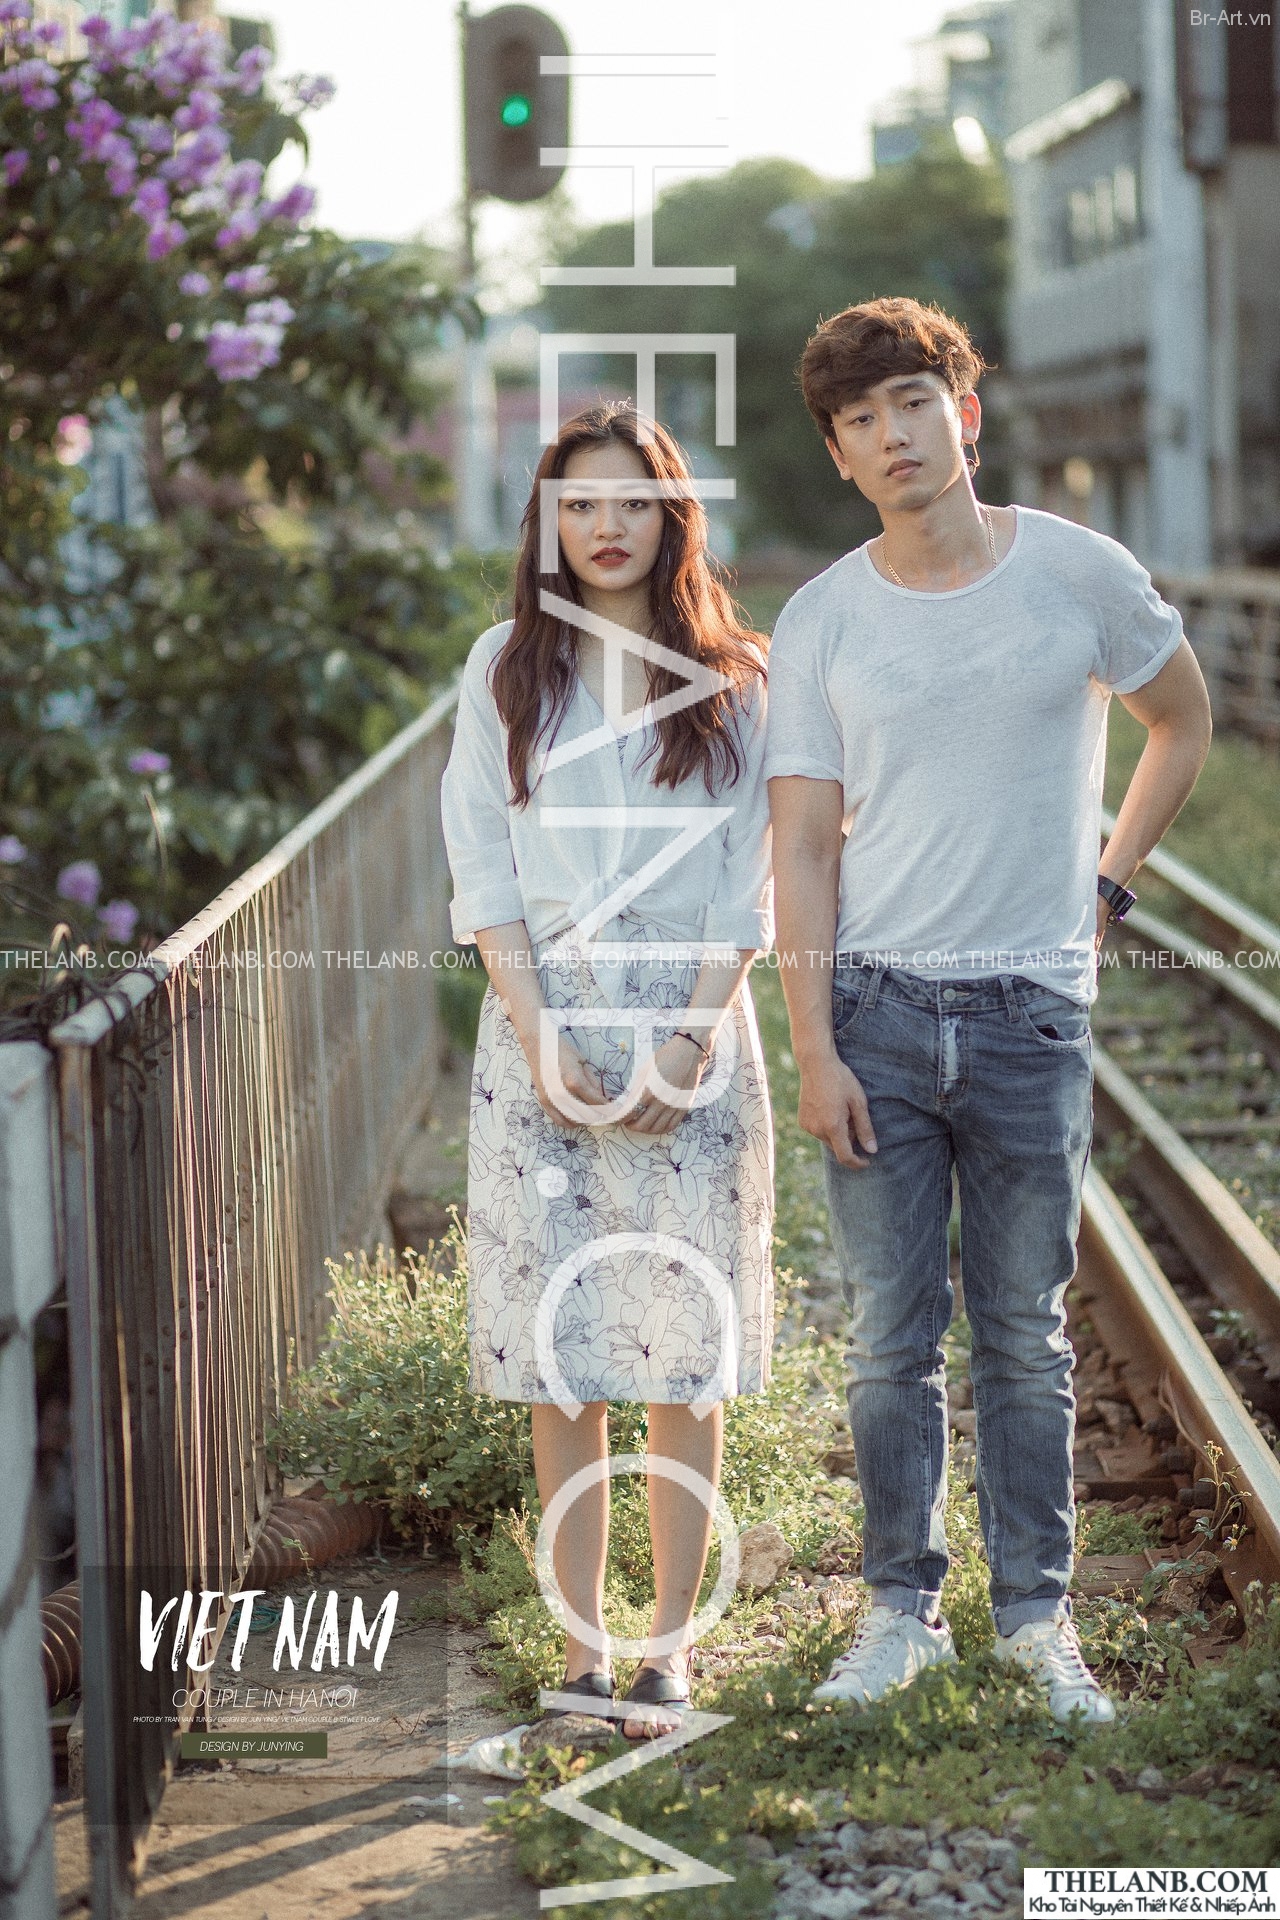 Chia sẻ preset bộ ảnh couple siêu cool ngầu của nhiếp ảnh gia Jun Ying Chia sẻ preset bộ ảnh couple siêu cool ngầu của nhiếp ảnh gia Jun Ying